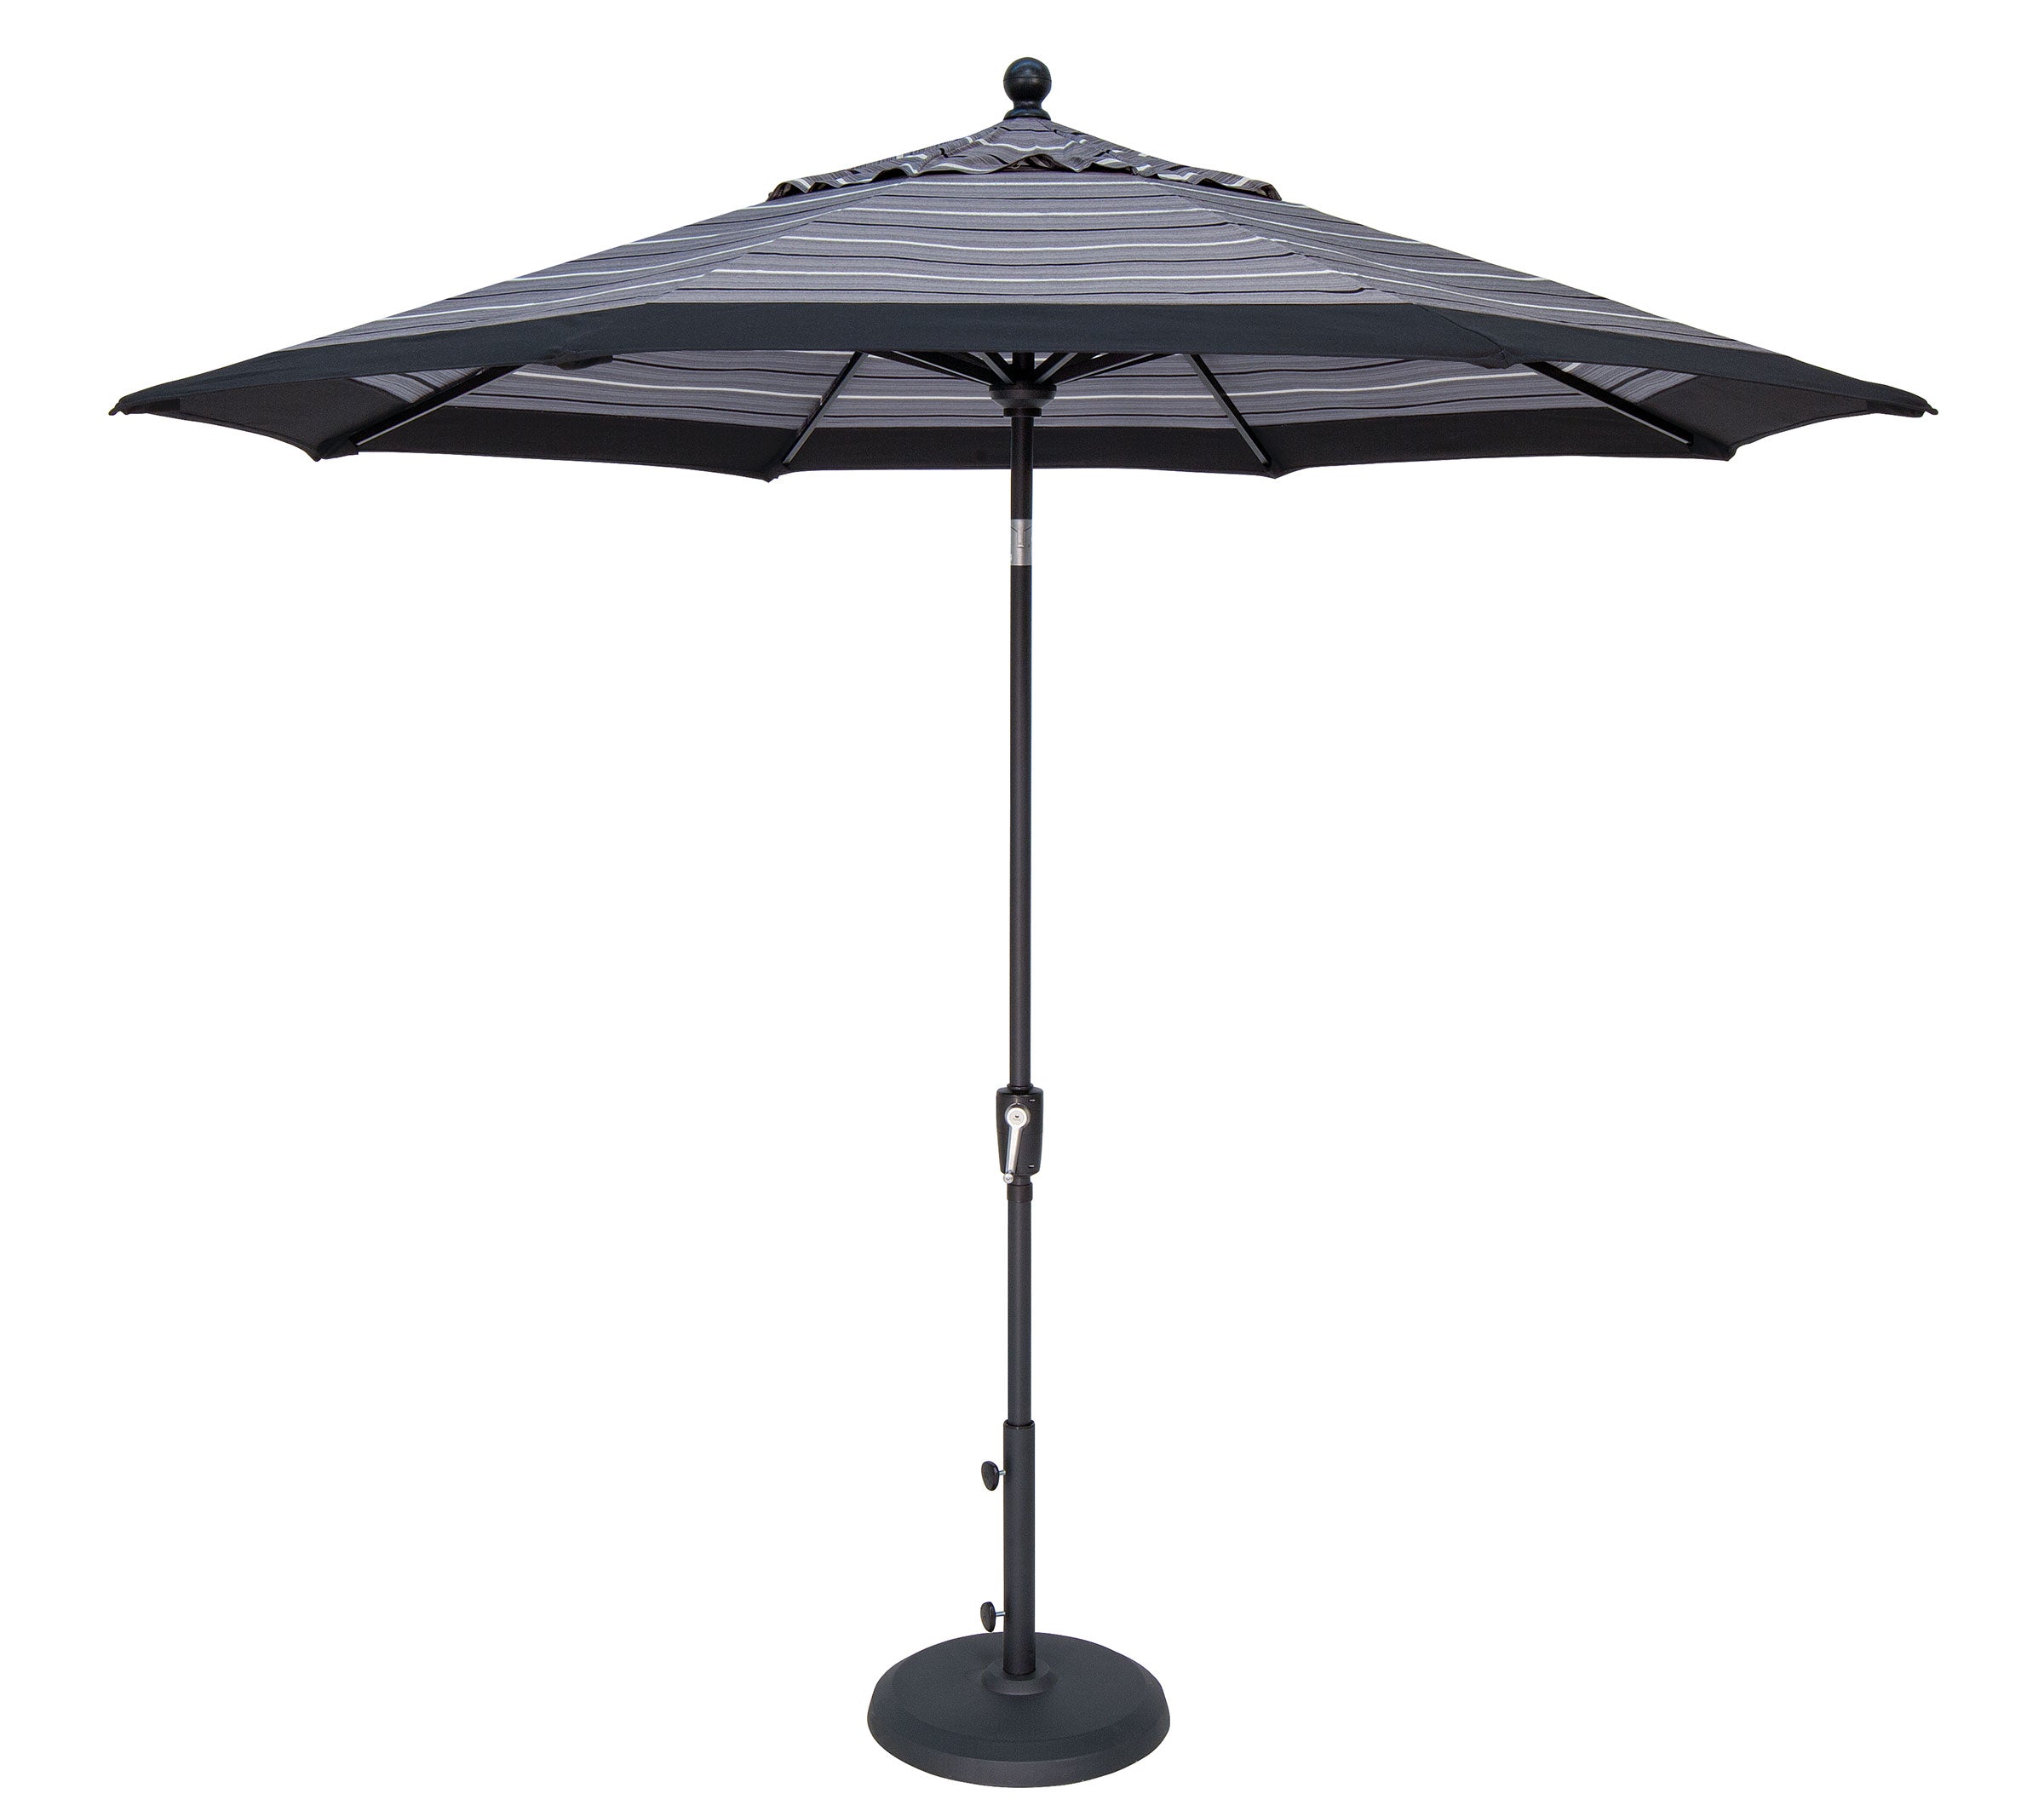 Treasure Garden 9' Octagon Push Button Tilt Umbrella with Black Frame Outdoor Umbrellas & Sunshade